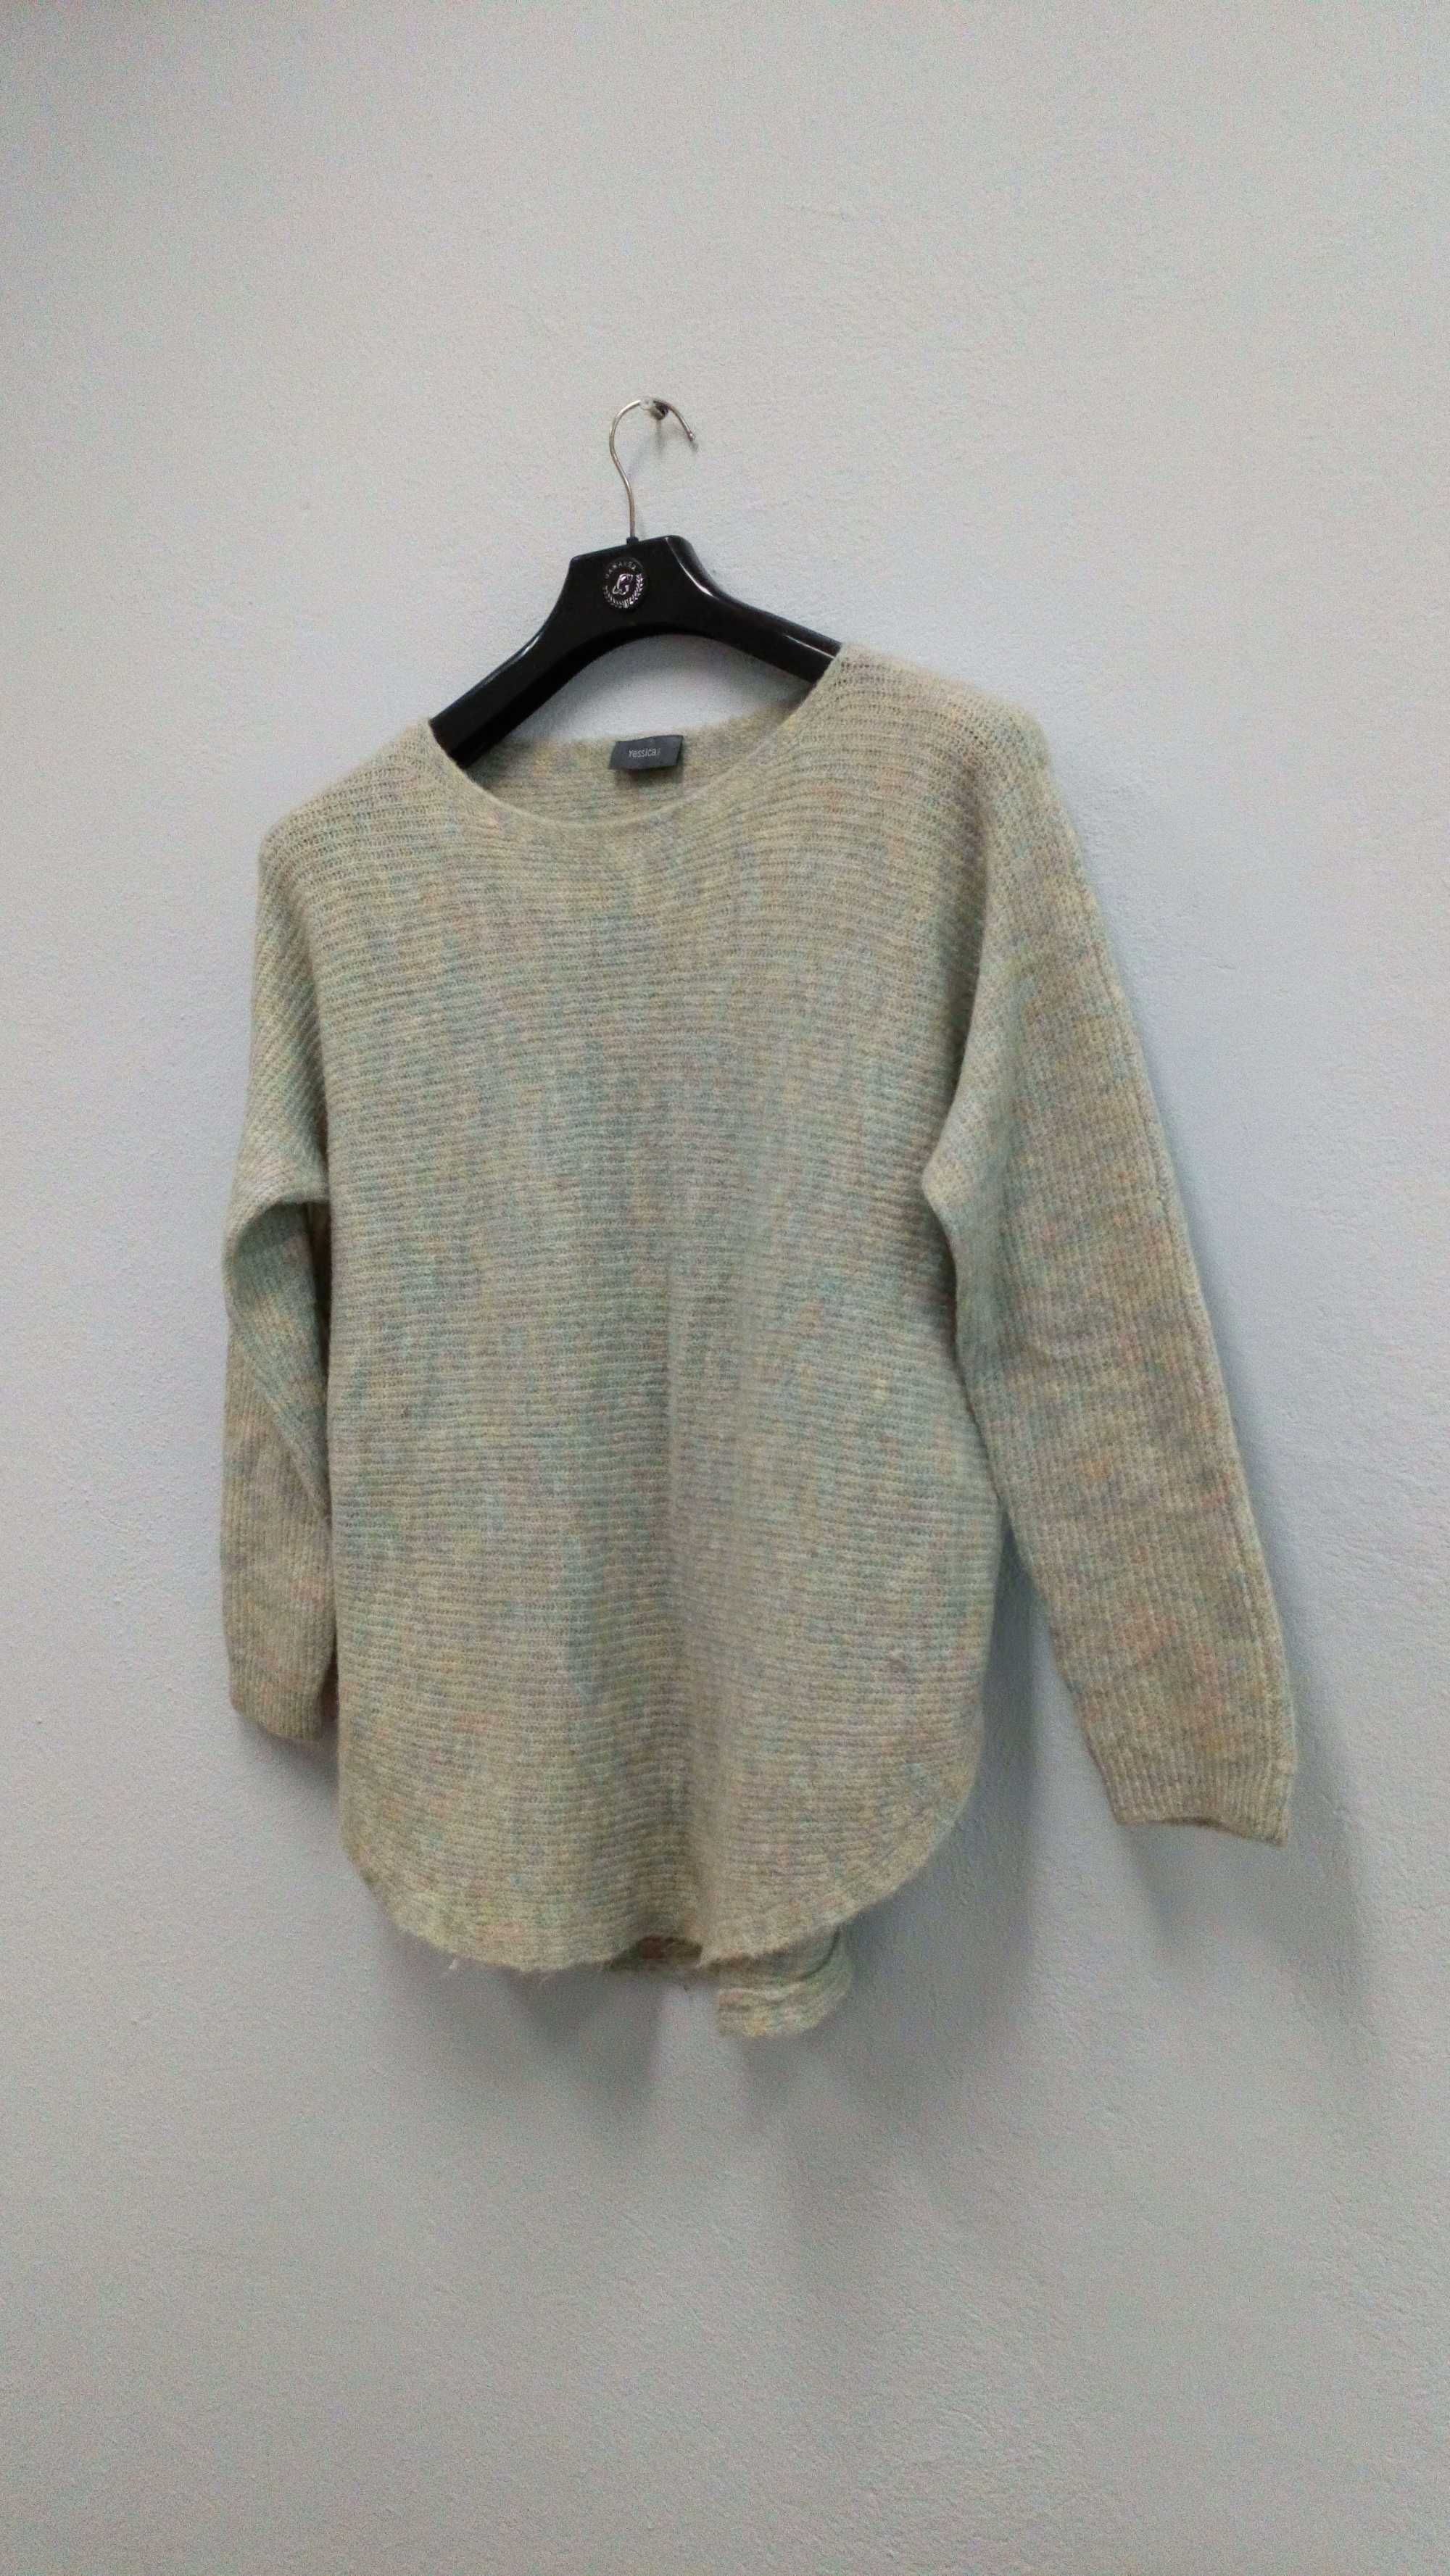 Sweter damski marki C&A Yessica, rozmiar XL, używany